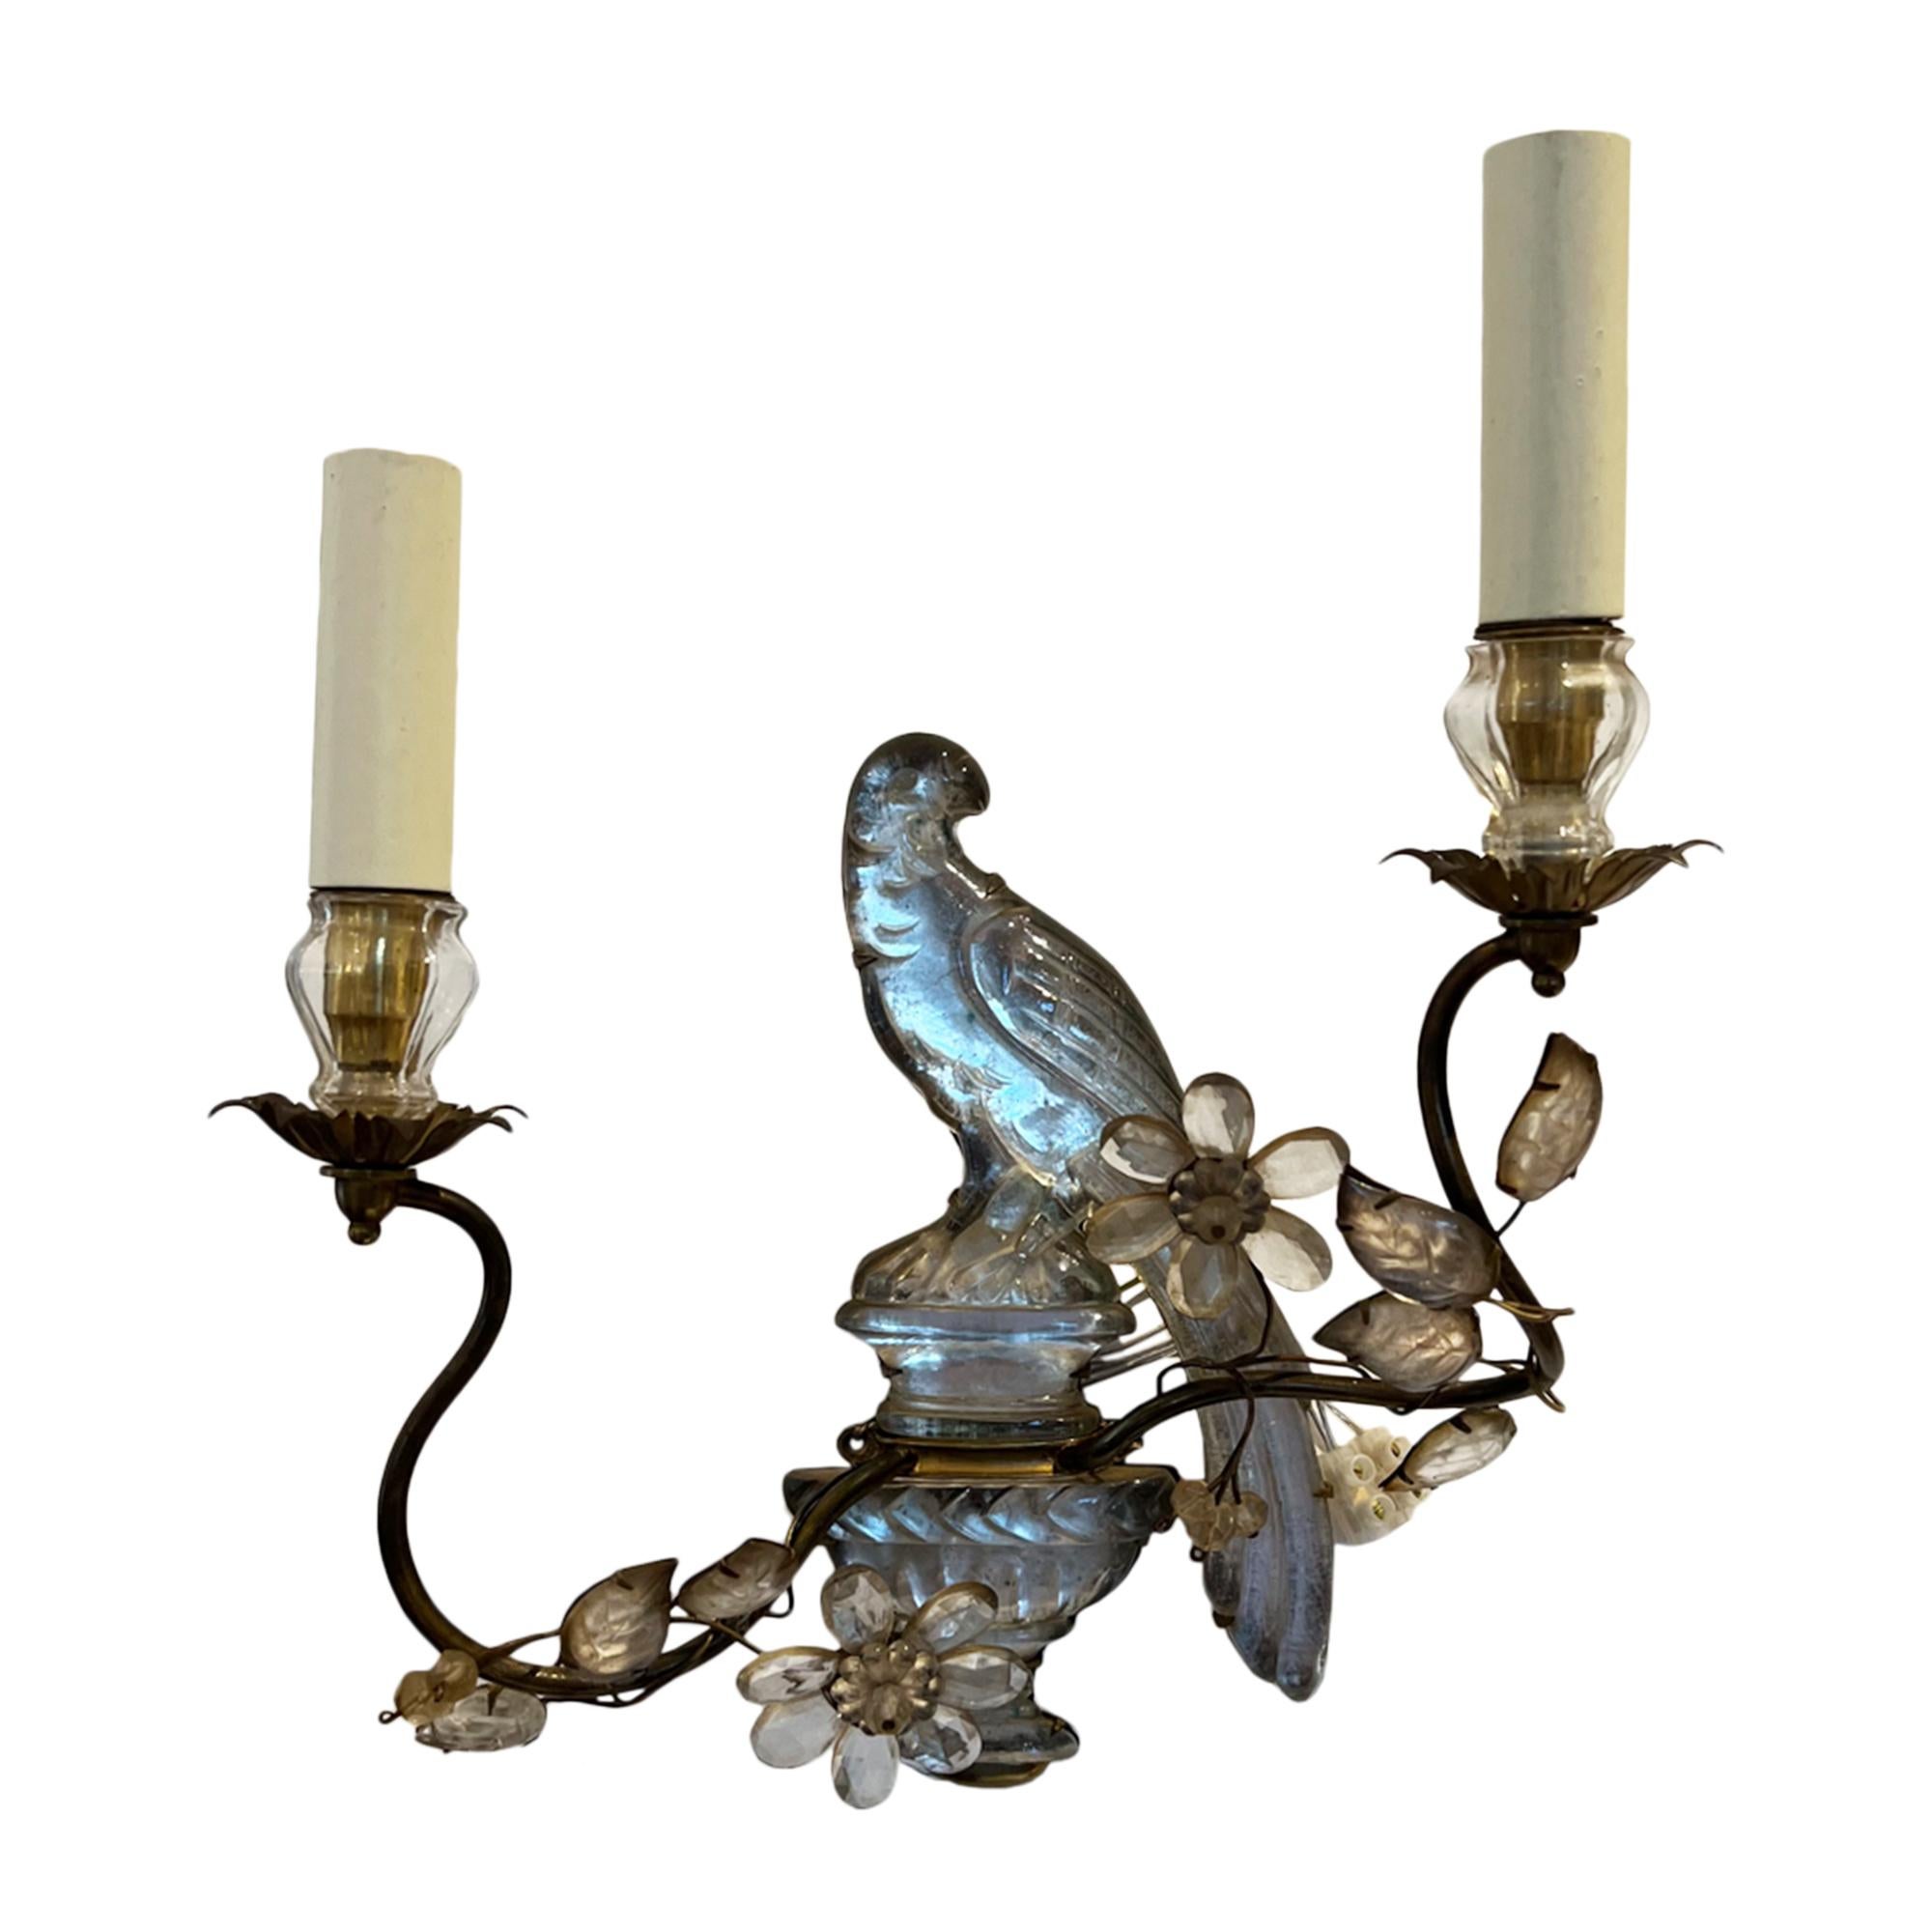 Un design iconique de la Maison Baguès avec des perroquets et des urnes - ces magnifiques appliques ont été fabriquées à Paris dans les années 1960. 

Éclairage luxueux du milieu du siècle.

Recâblé. 

Depuis les années 1860, le célèbre